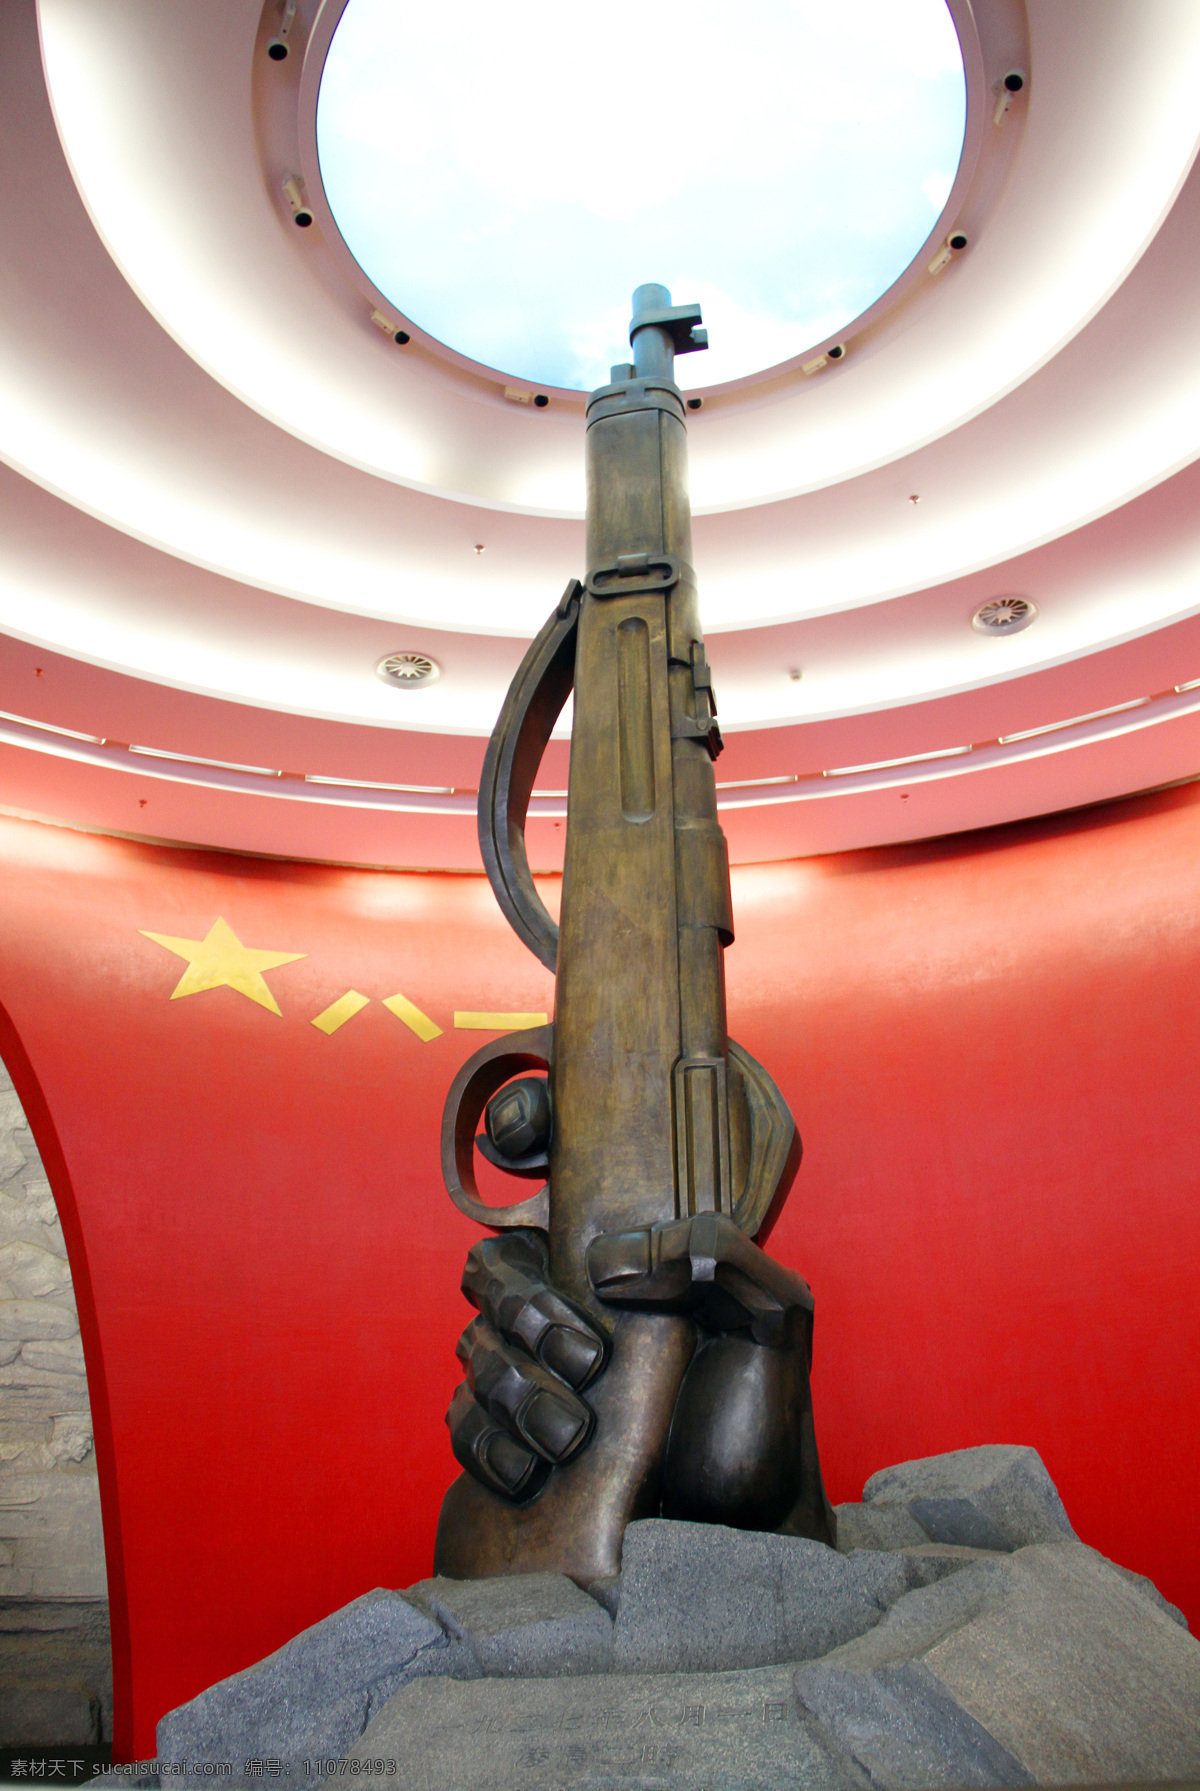 八一起义雕塑 南昌 八一 起义 雕塑 枪雕塑 美丽南昌 国内旅游 旅游摄影